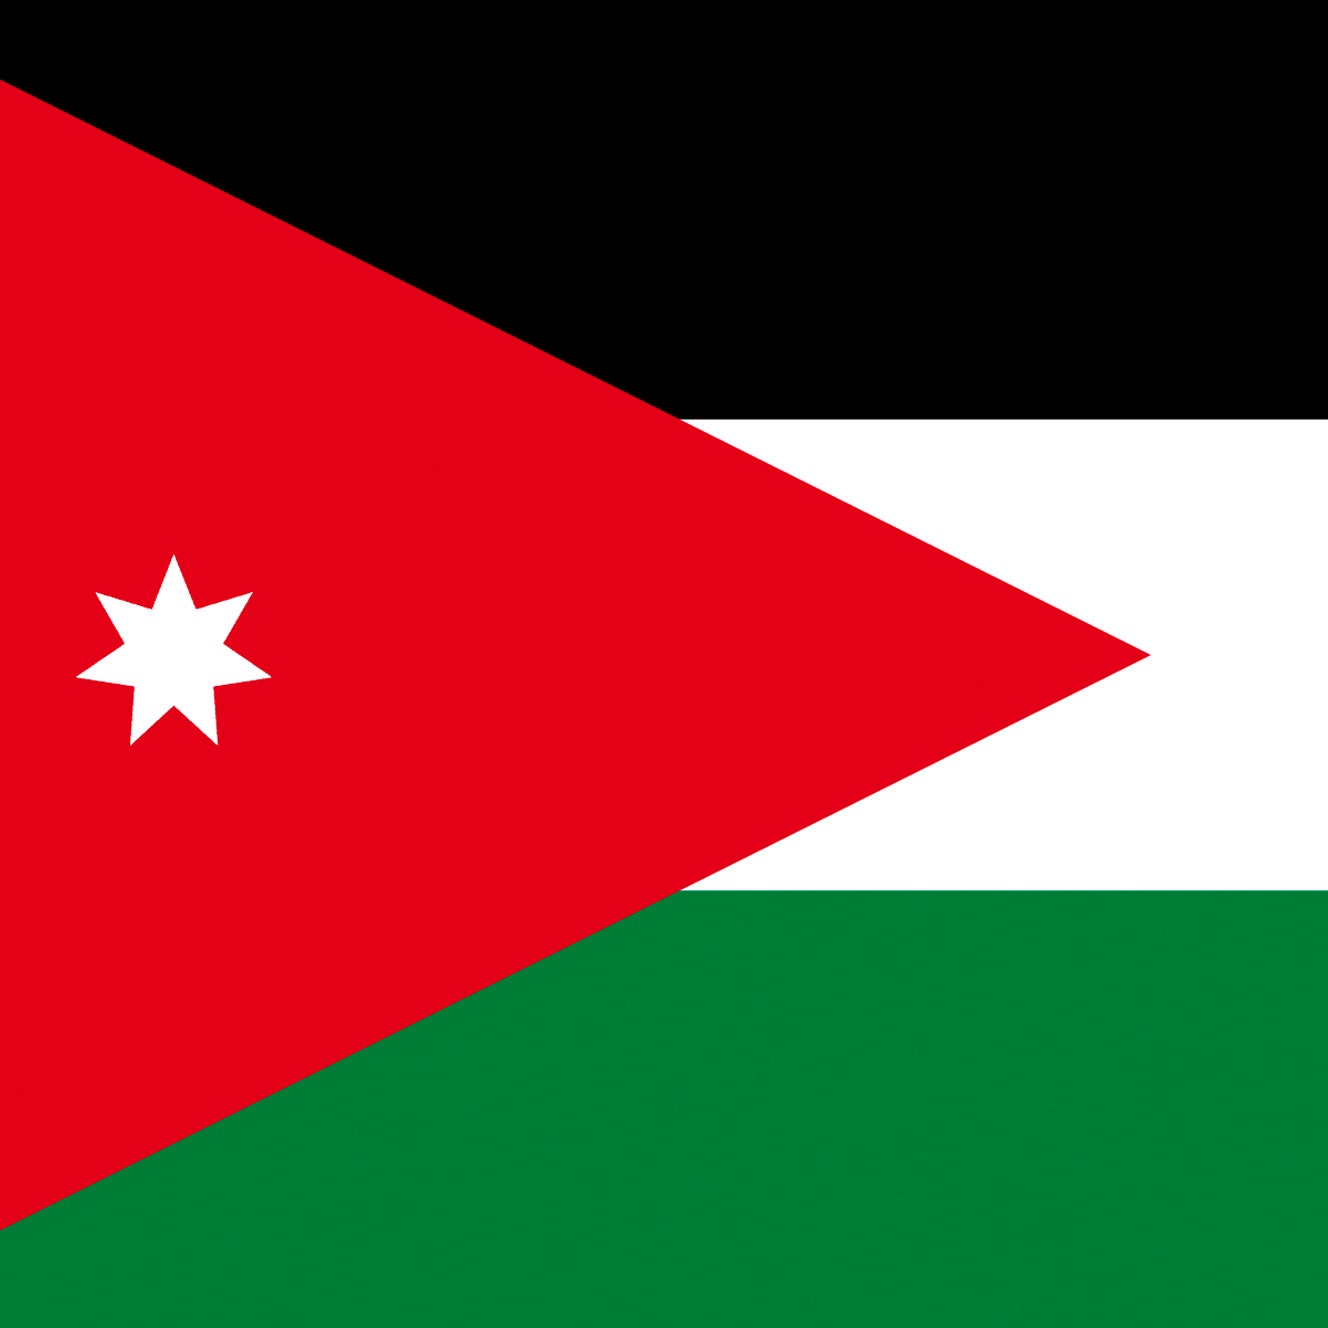 flag of jordan